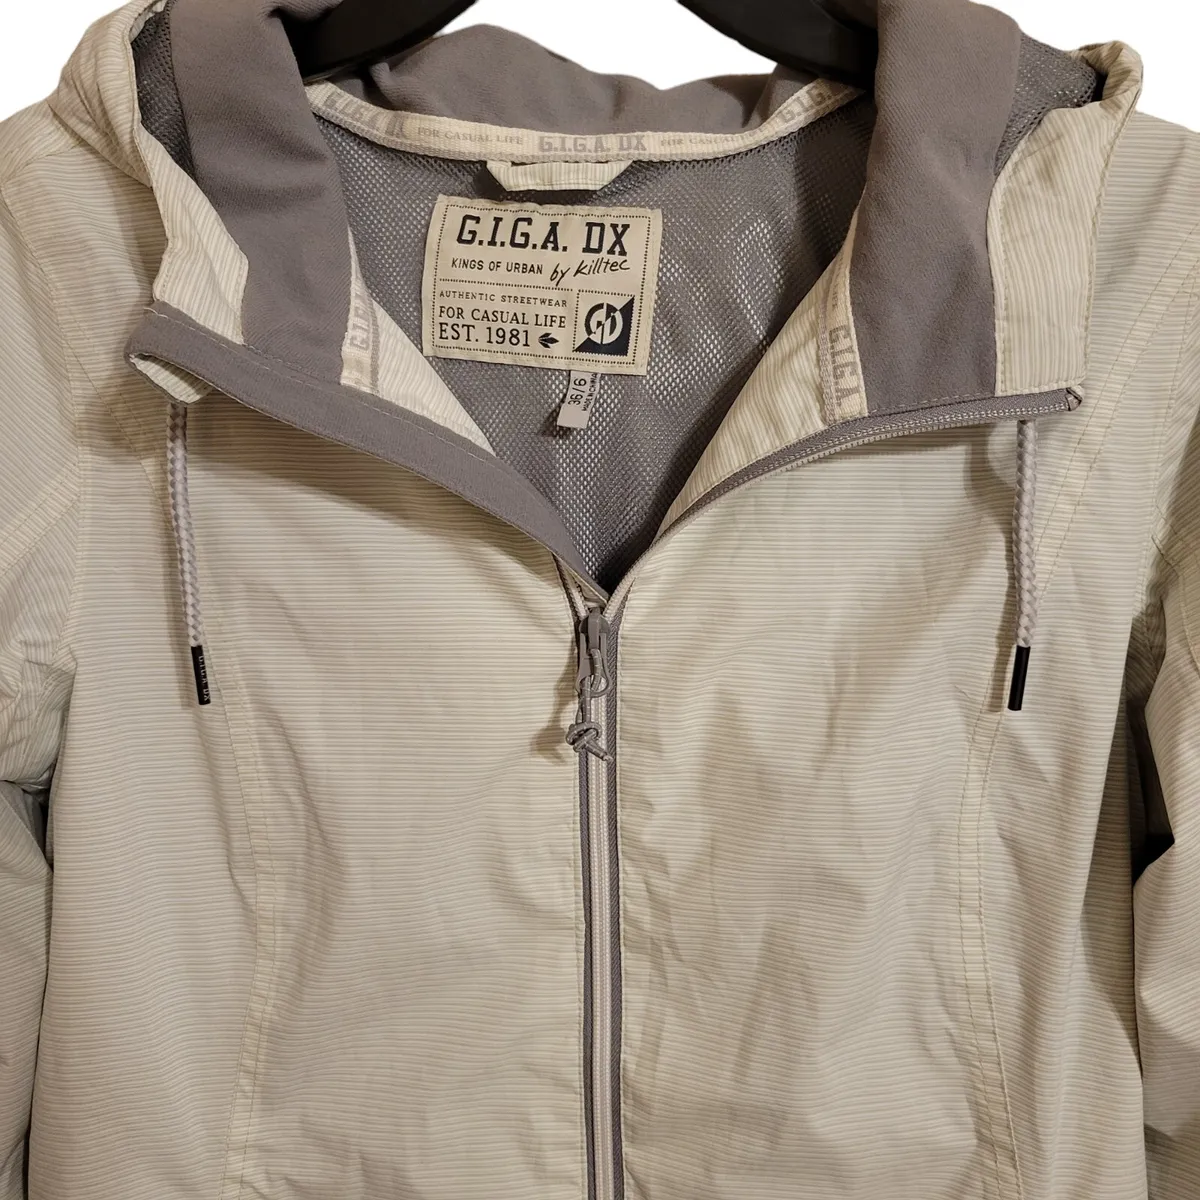 G.I.G.A DX By Killtec Sz Streewear White Off | eBay Gray 36/6 Striped Jacket